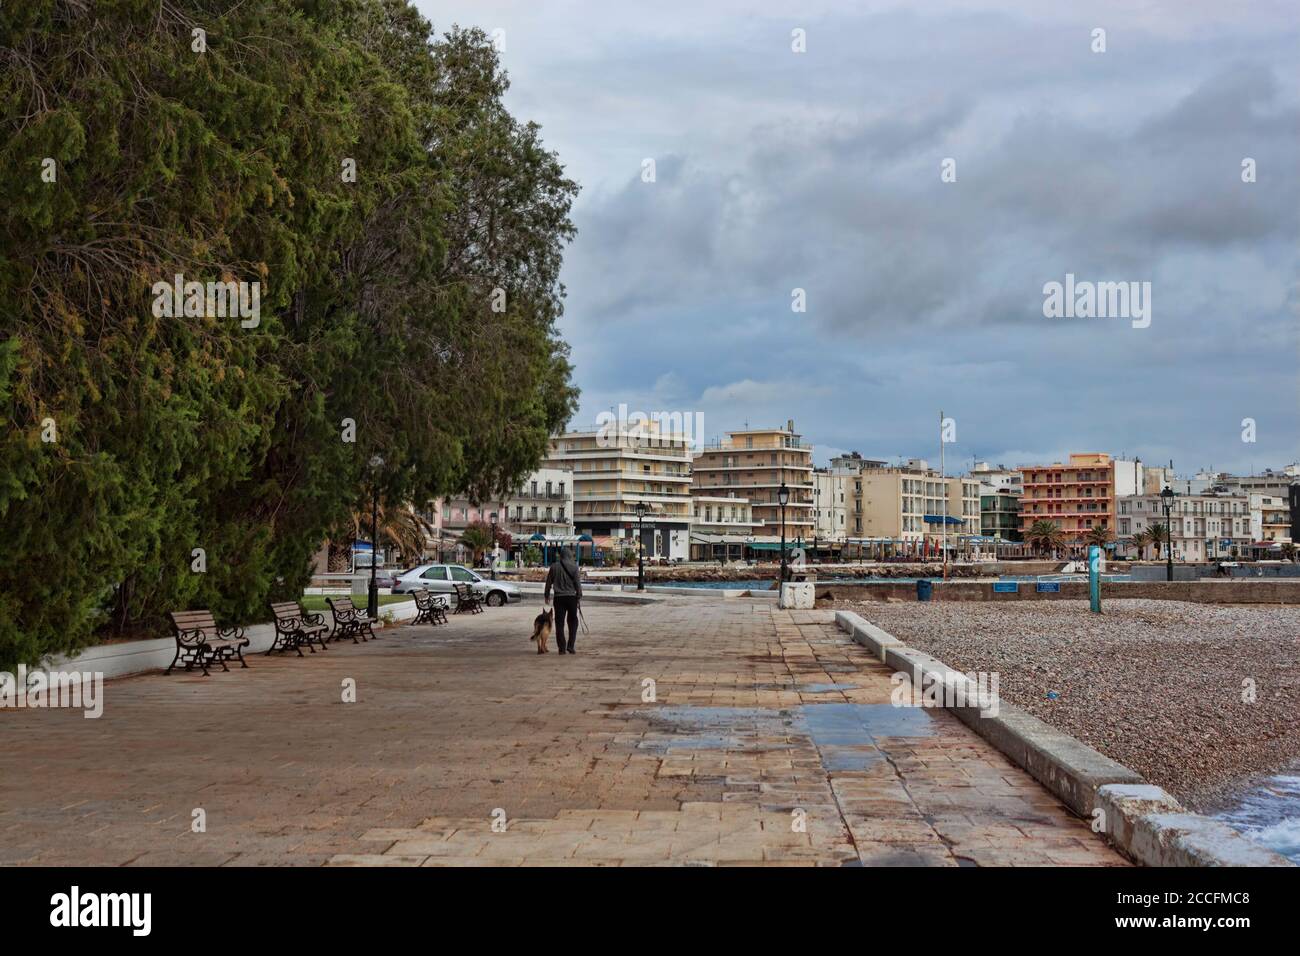 LOUTRAKI, GRECIA - 27 DE JUNIO de 2020: En un día nublado en el desierto paseo marítimo de Loutraki, sólo un hombre con un perro Foto de stock